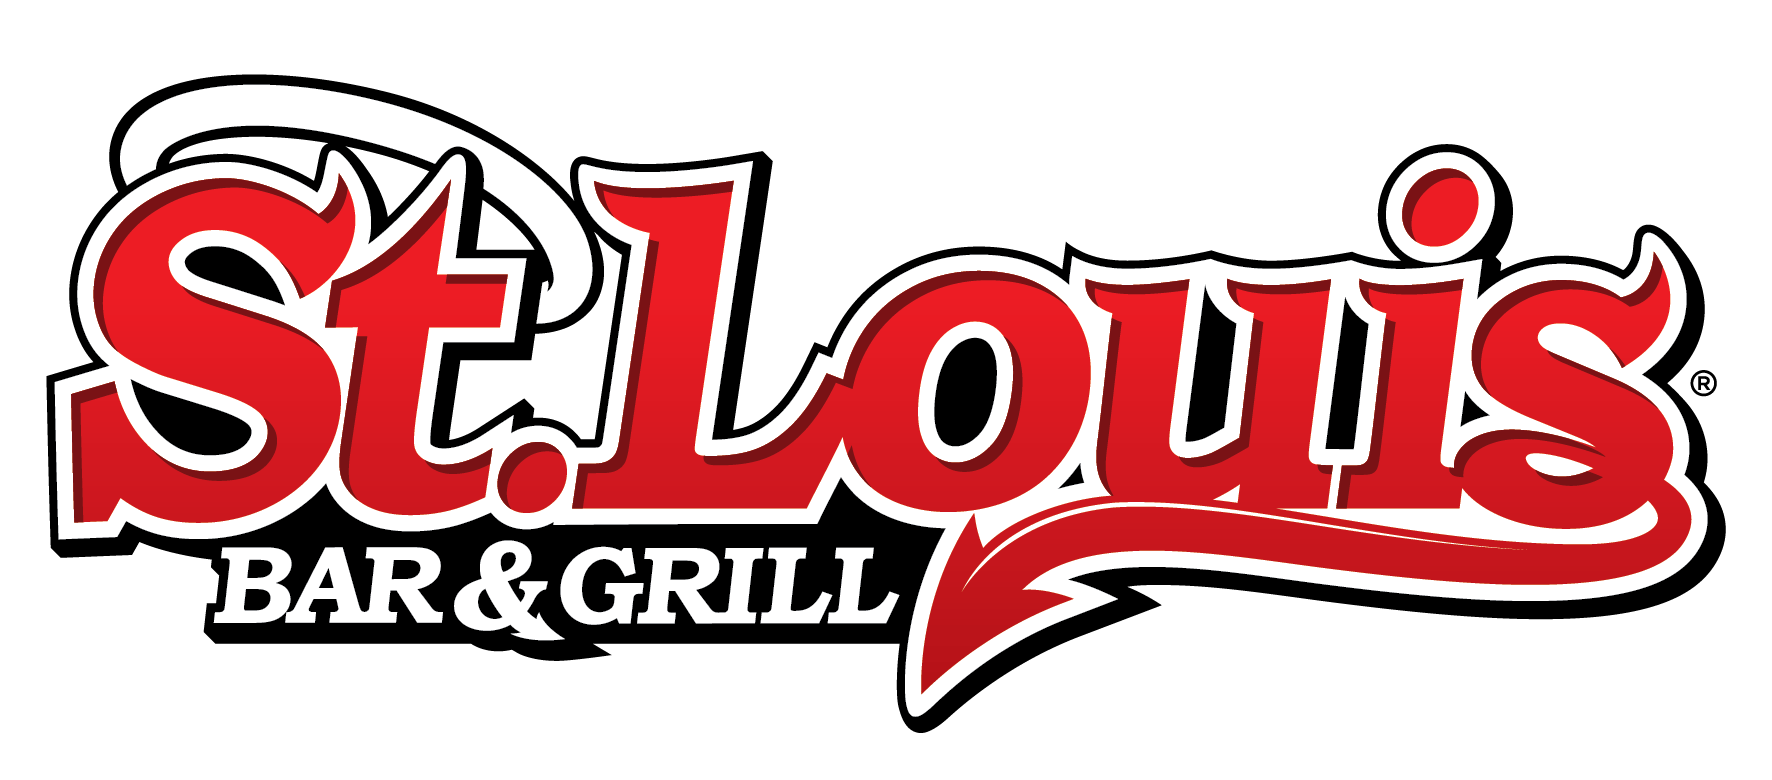 New Customer Alert: St. Louis Bar and Grill - Meazureup